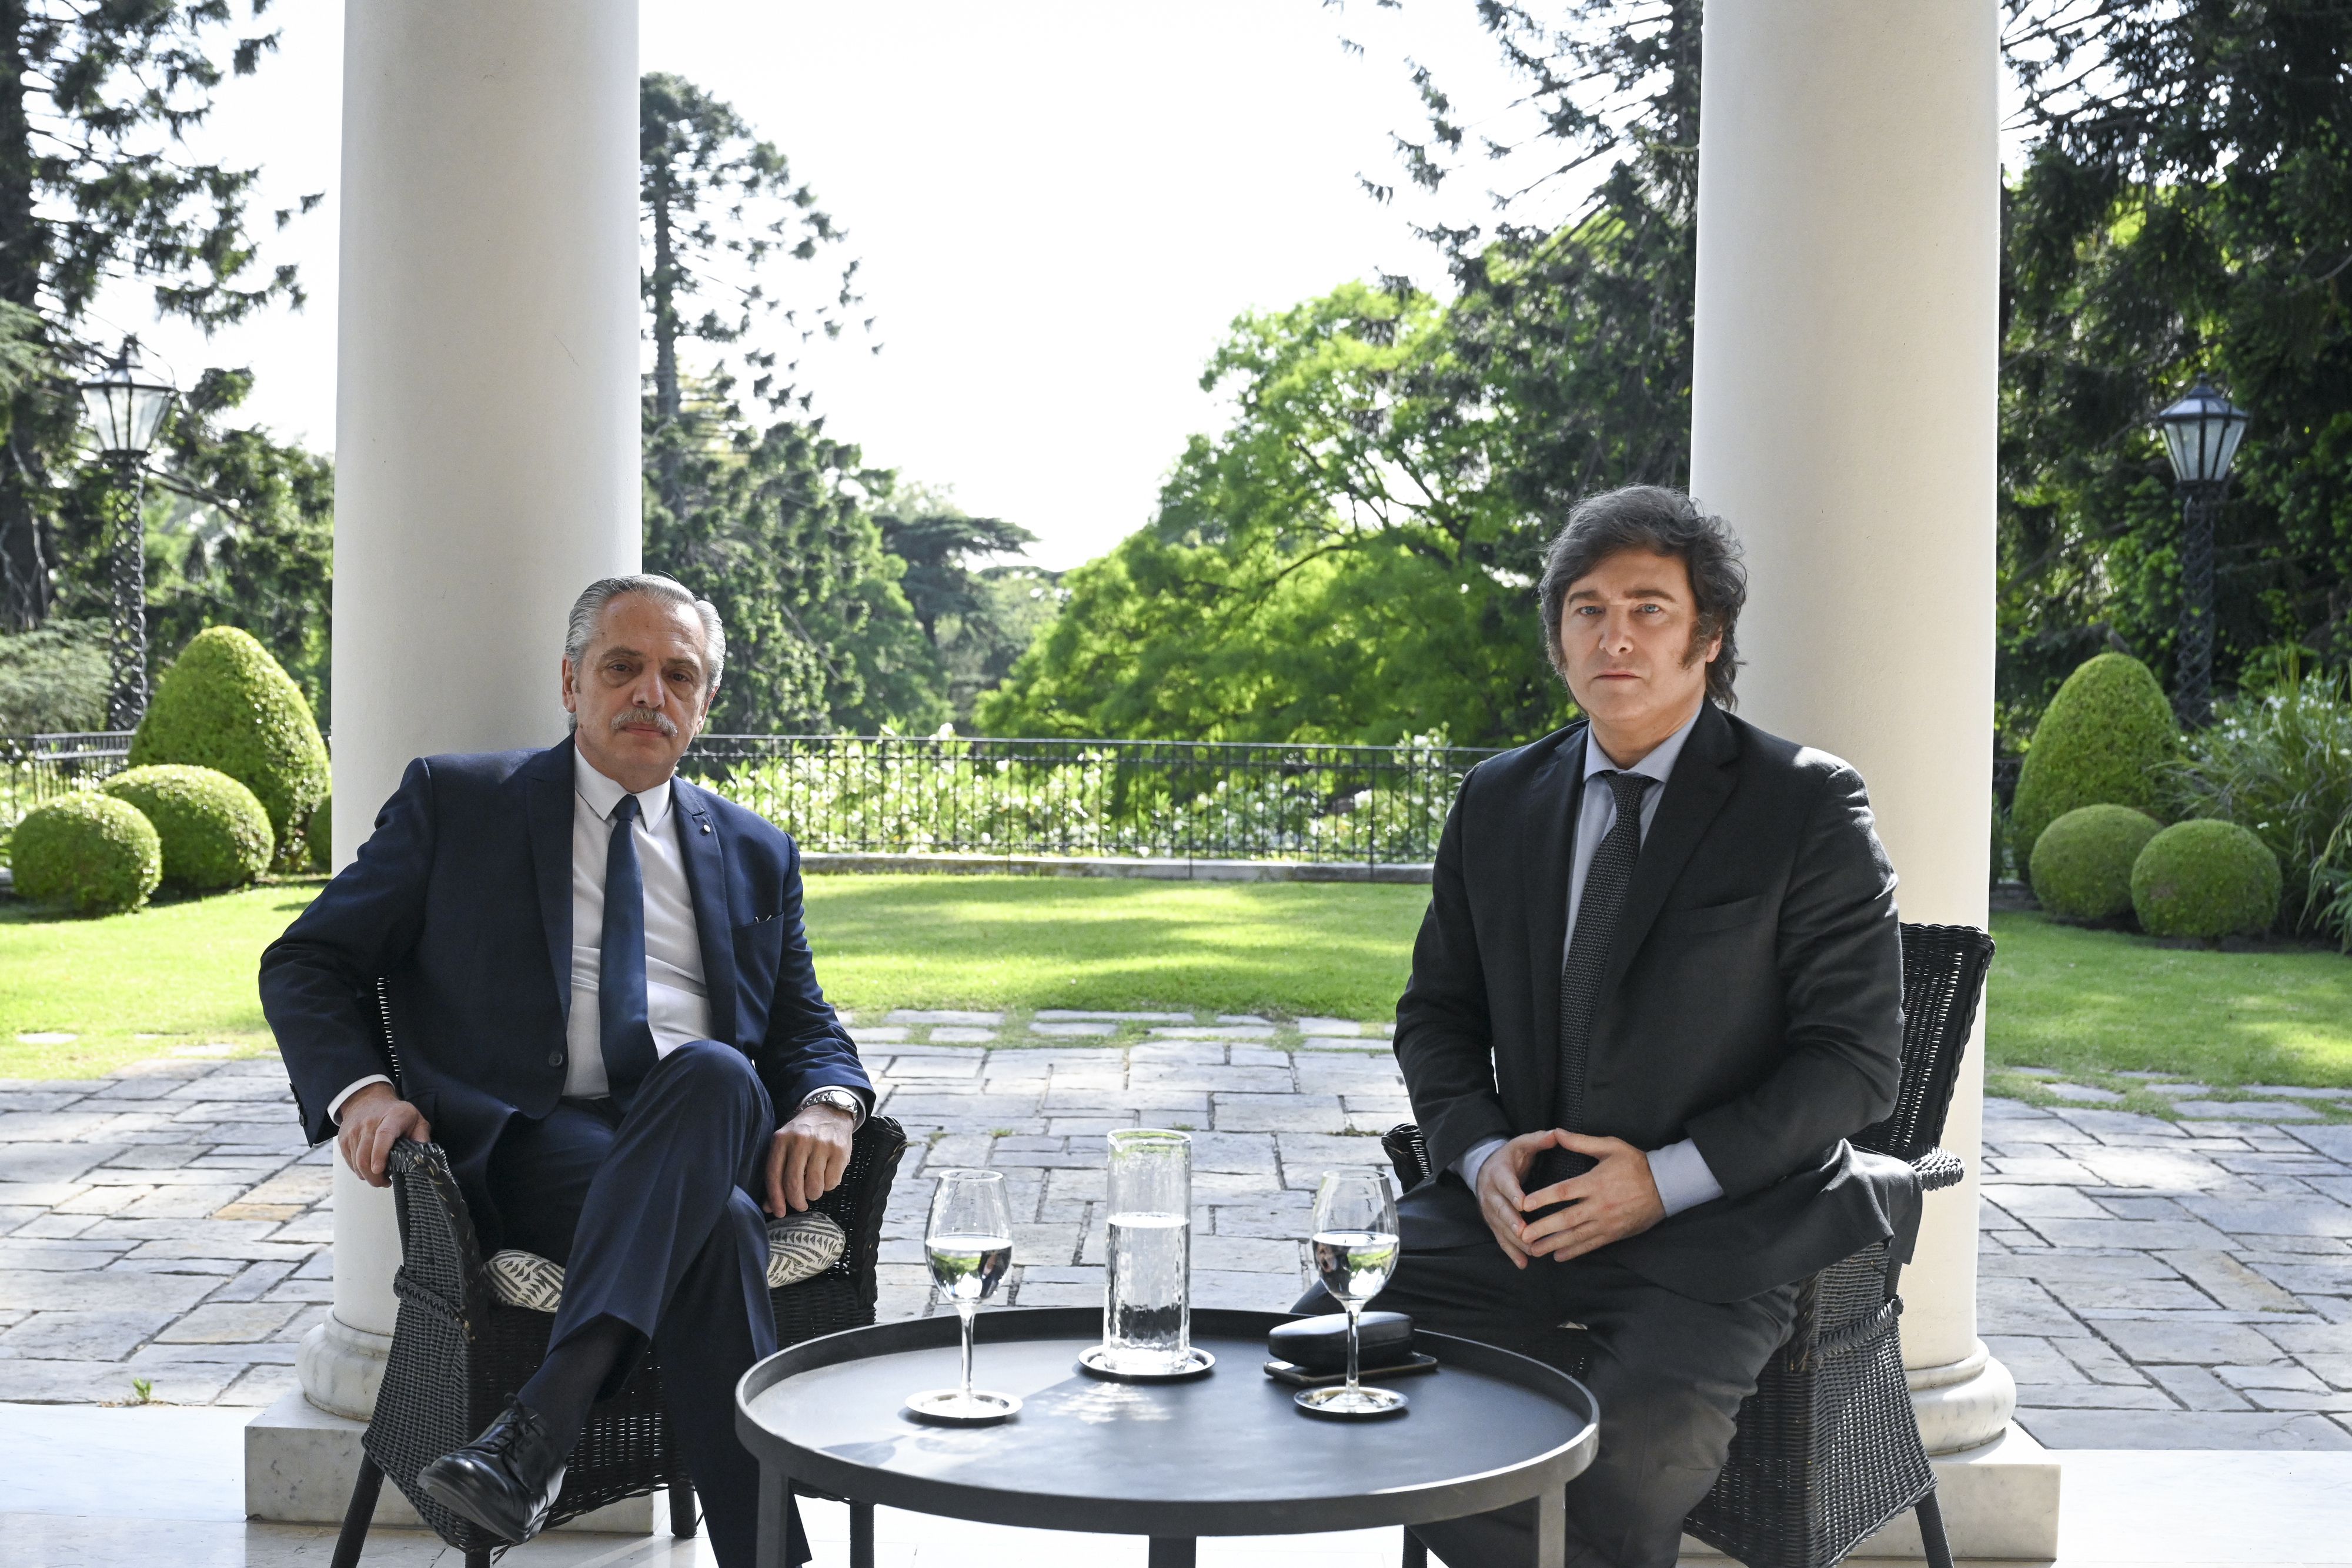 Alberto Fernández y Javier Milei en la Quinta de Olivos (María Eugenia Cerutti/Presidencia Argentina vía AP)